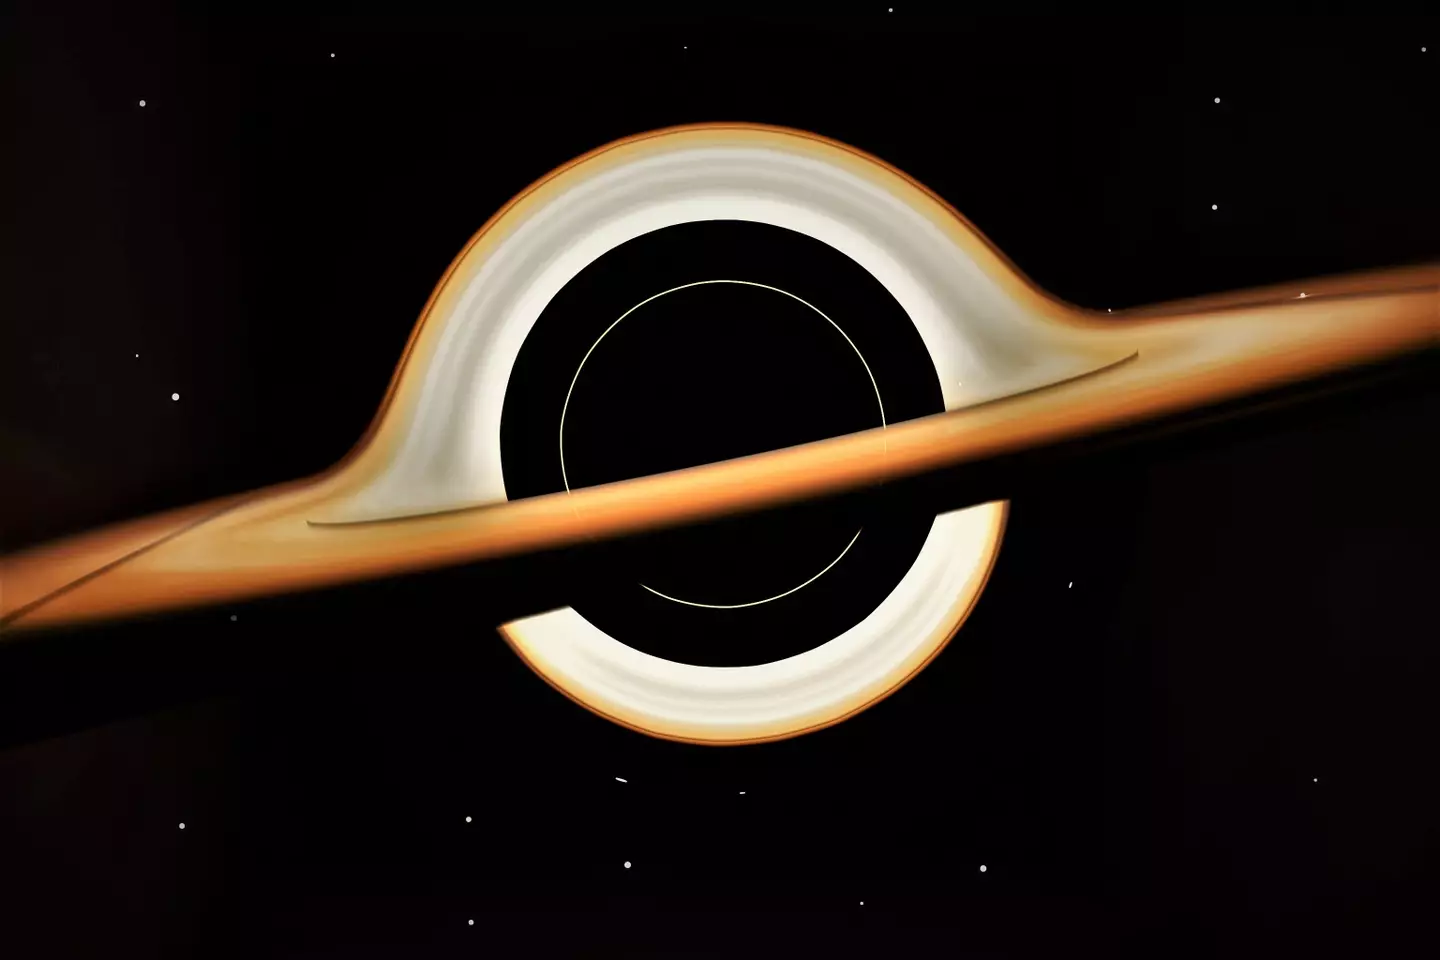 An artist's render of a black hole.